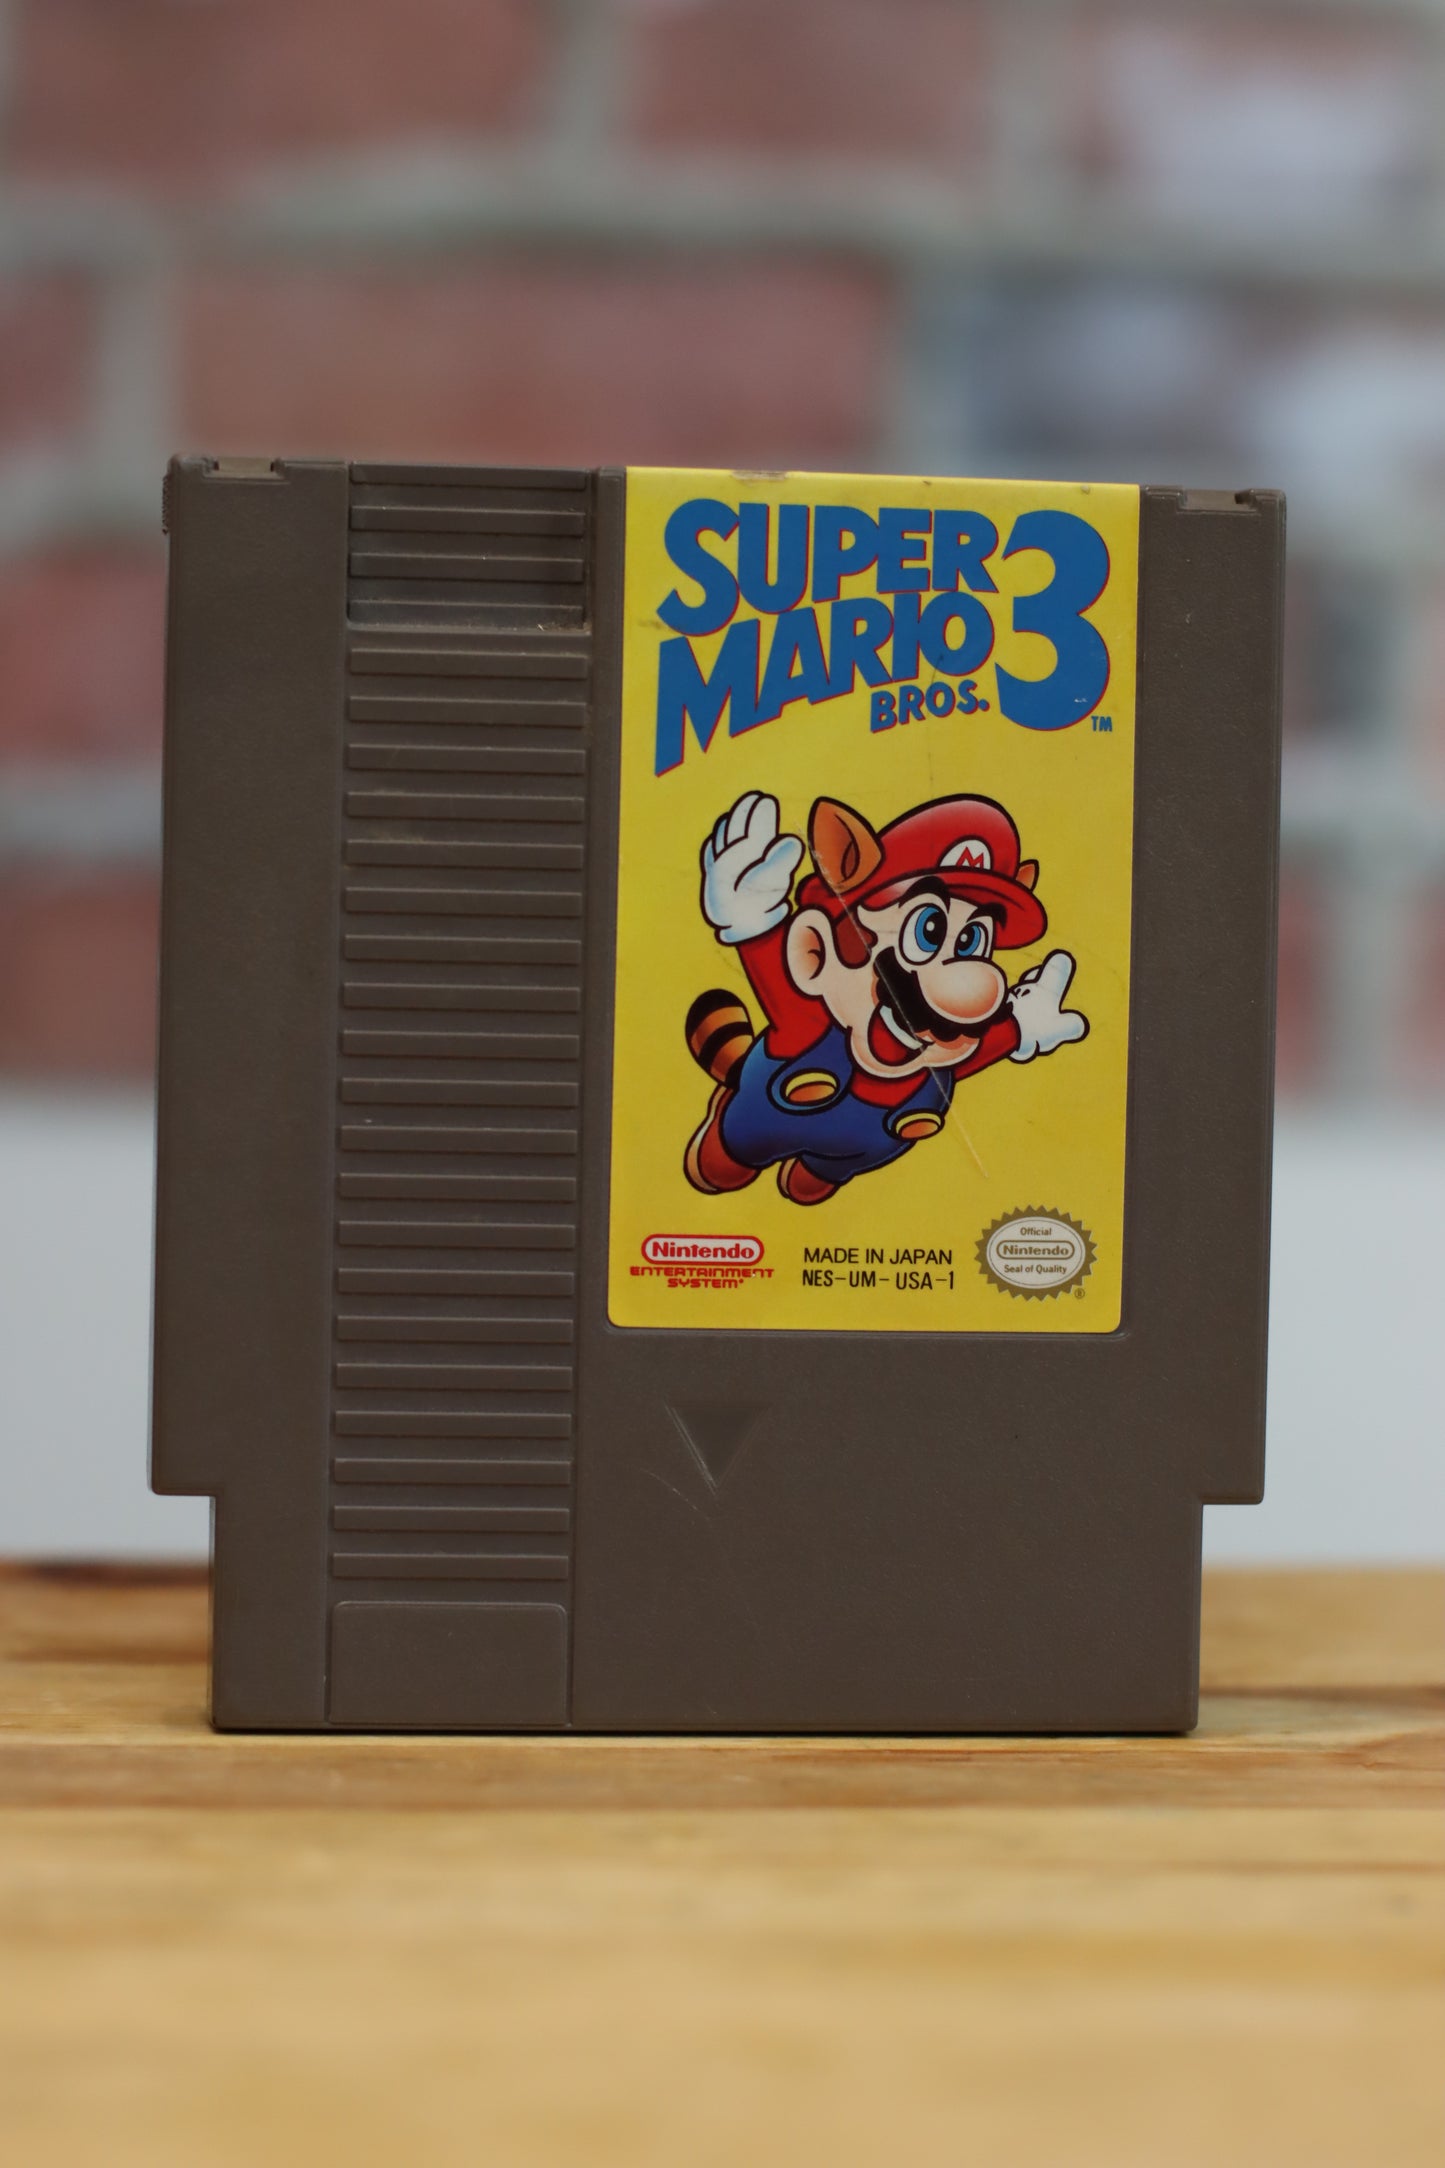 Super Mario Bros 3 Original NES Nintendo Video Game Tested